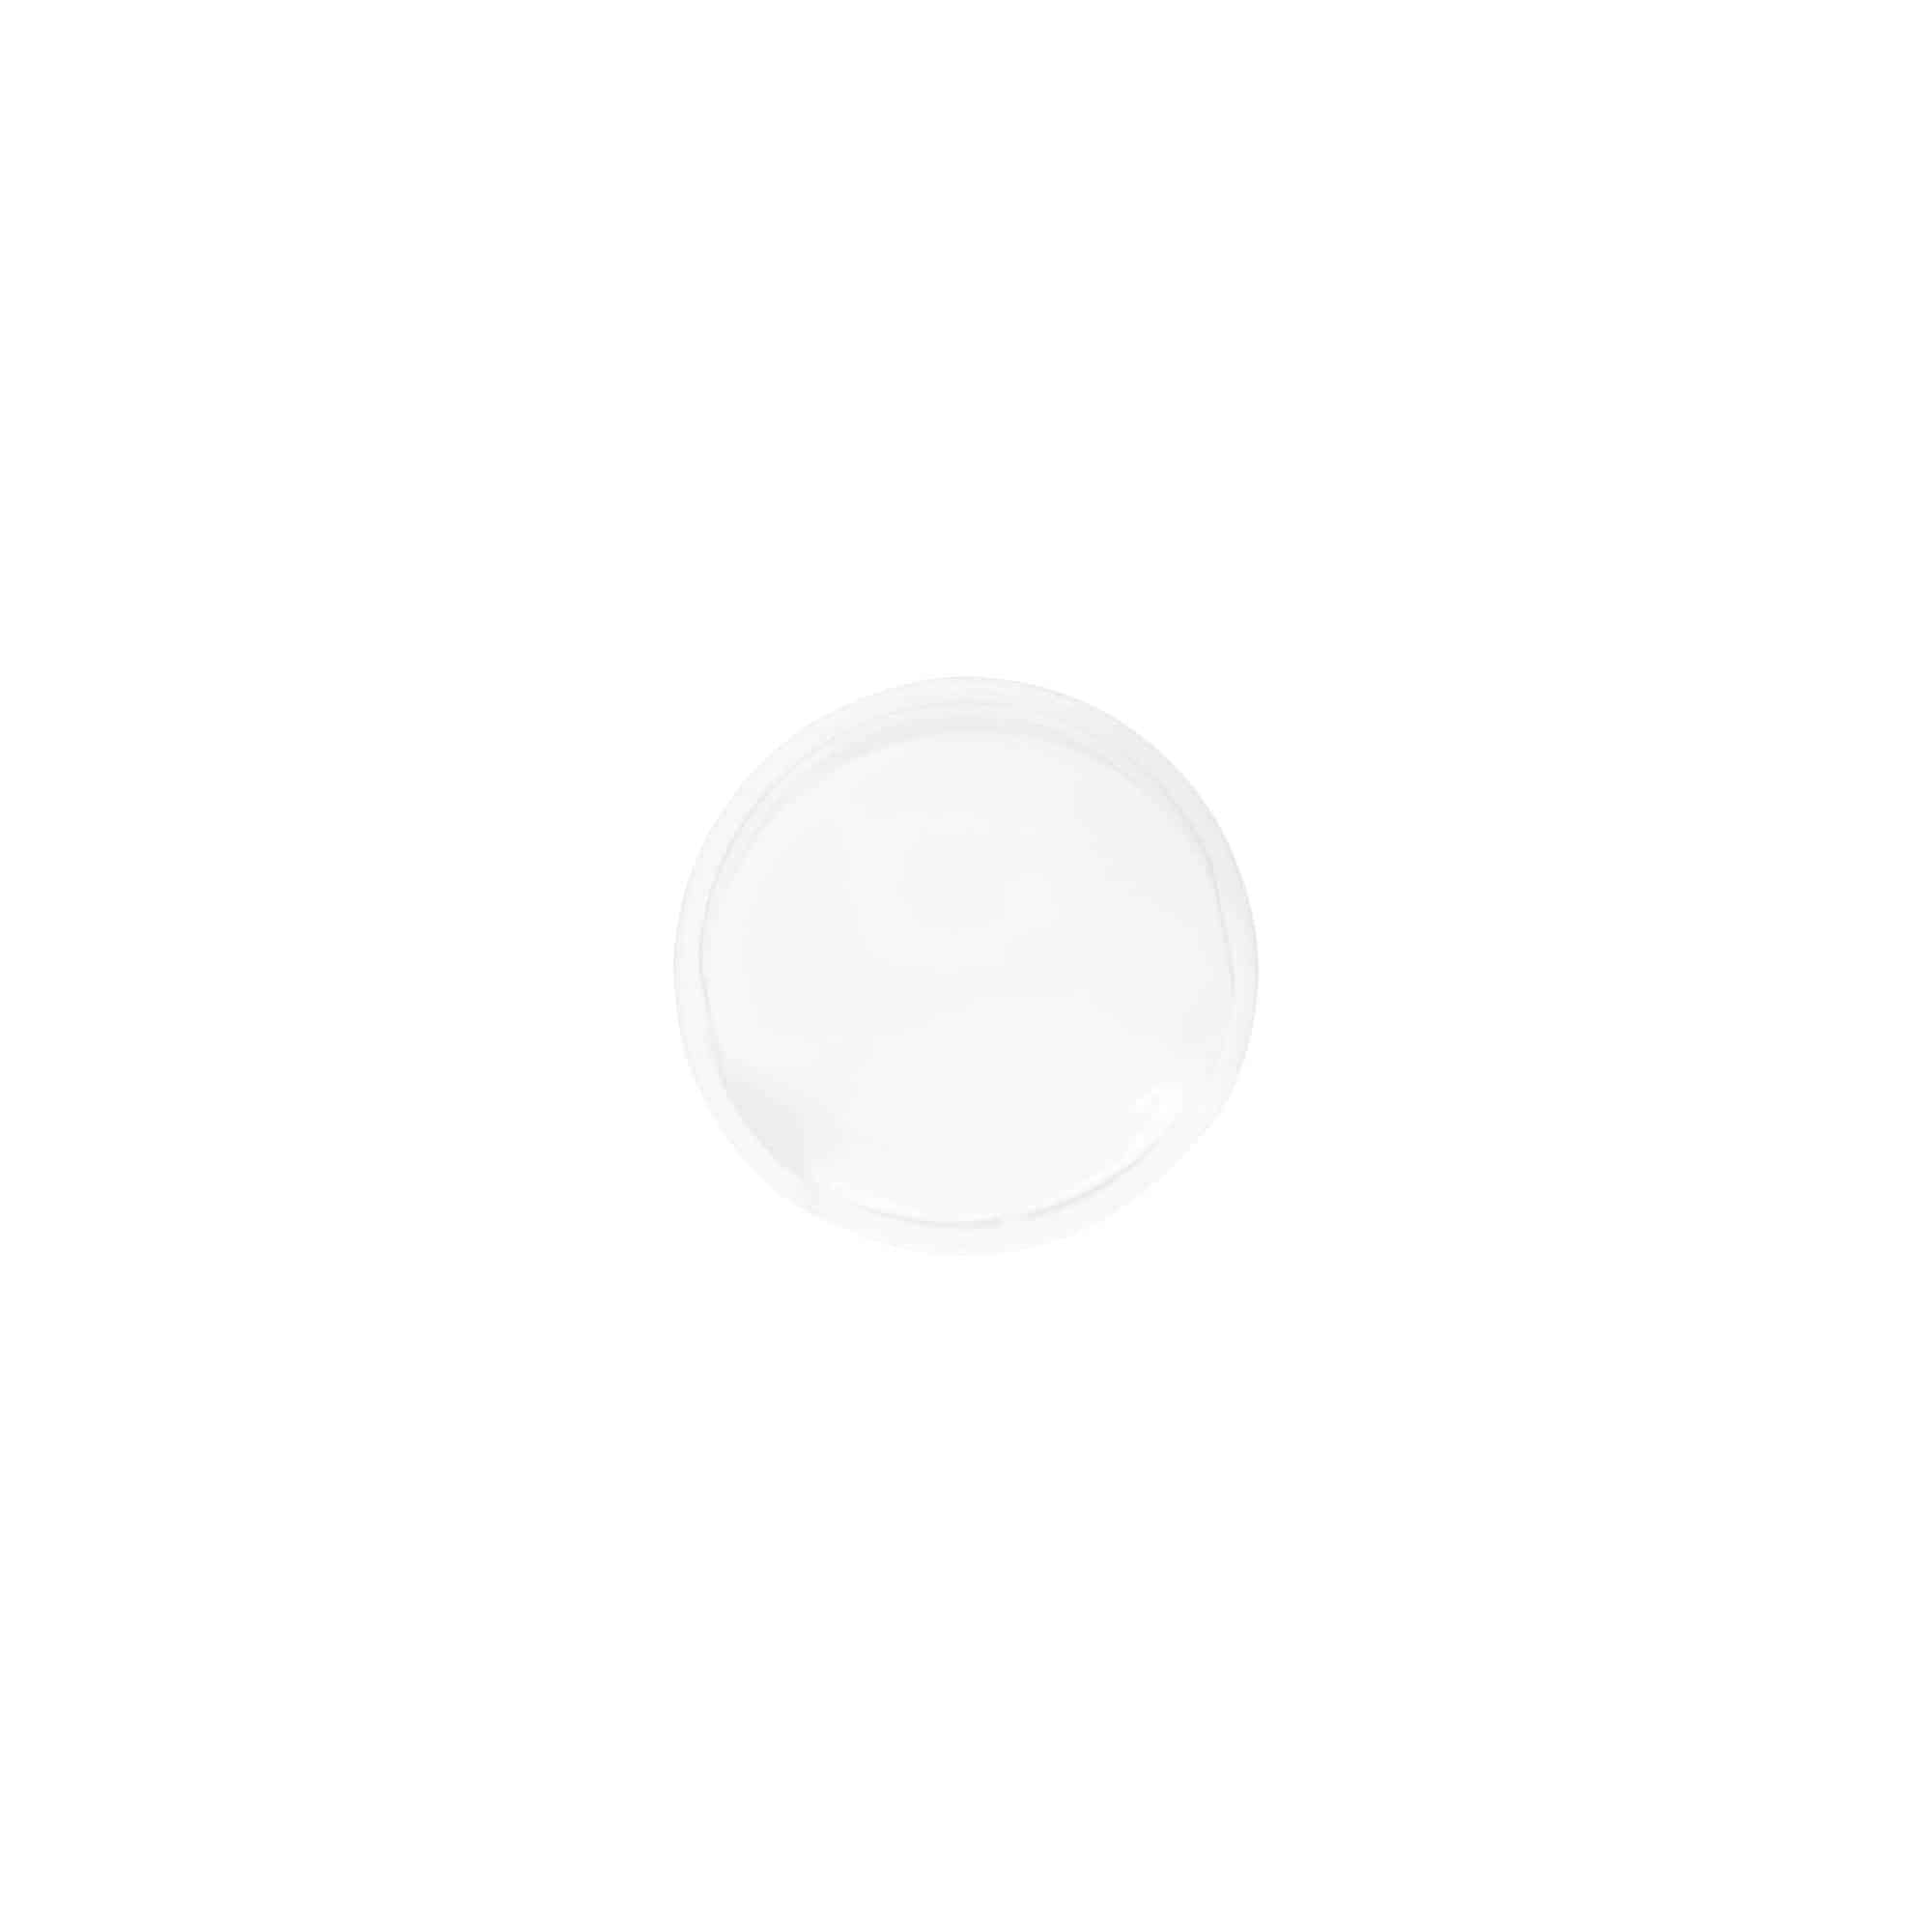 Schraubverschluss Disc Top, PP-Kunststoff, weiß, für Mündung: GPI 24/410